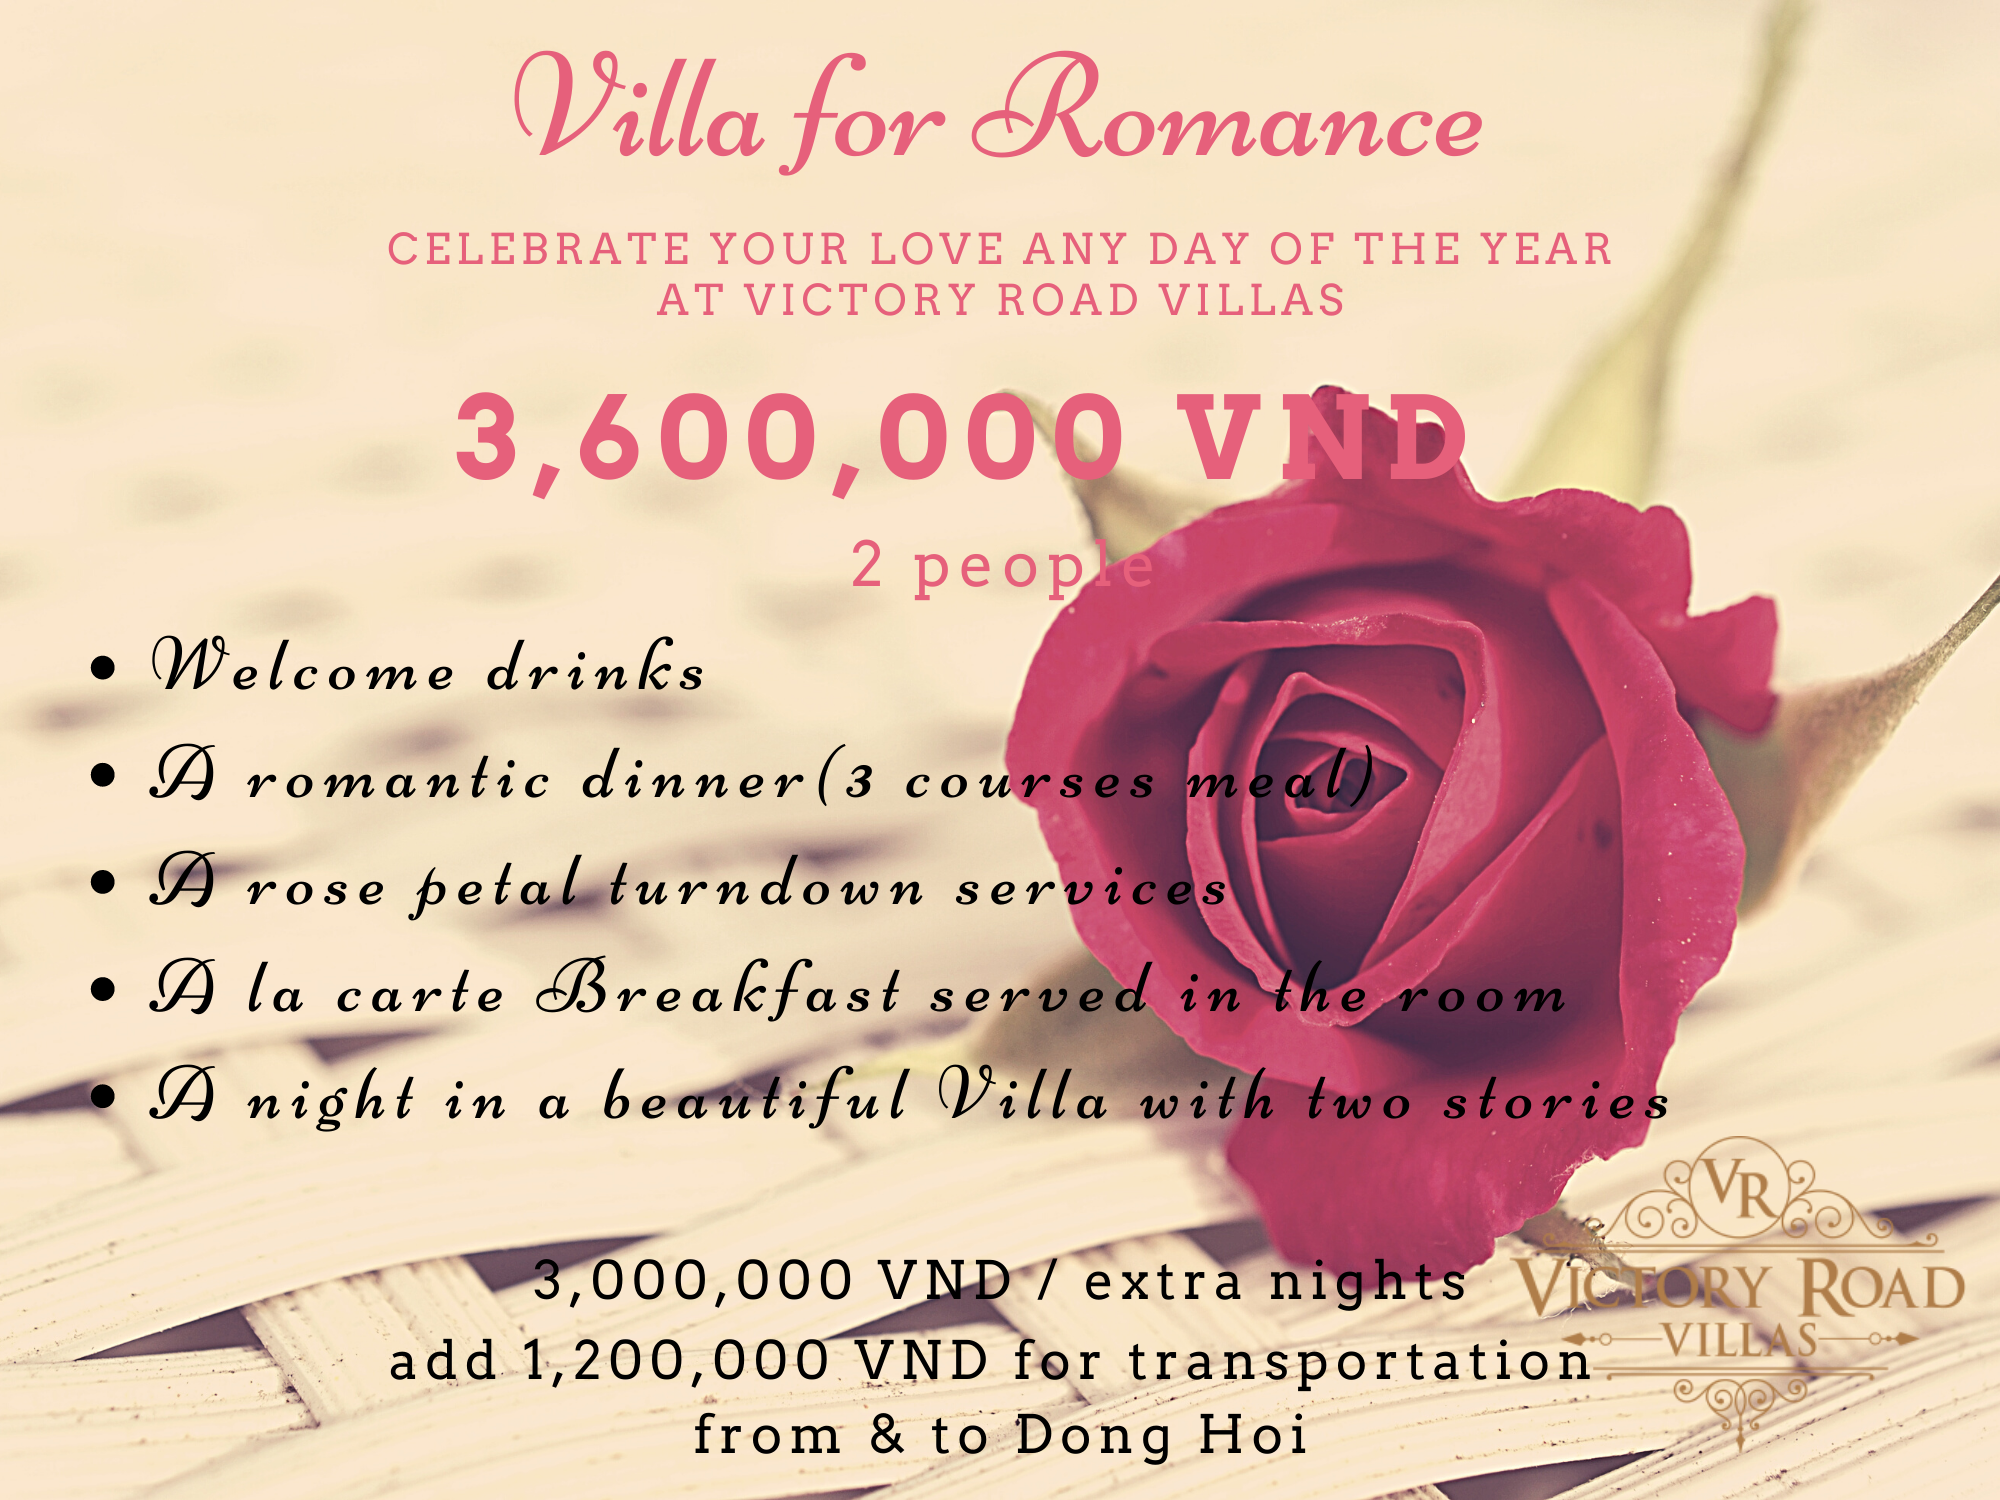 Victory Road Villas: Villa for Romance